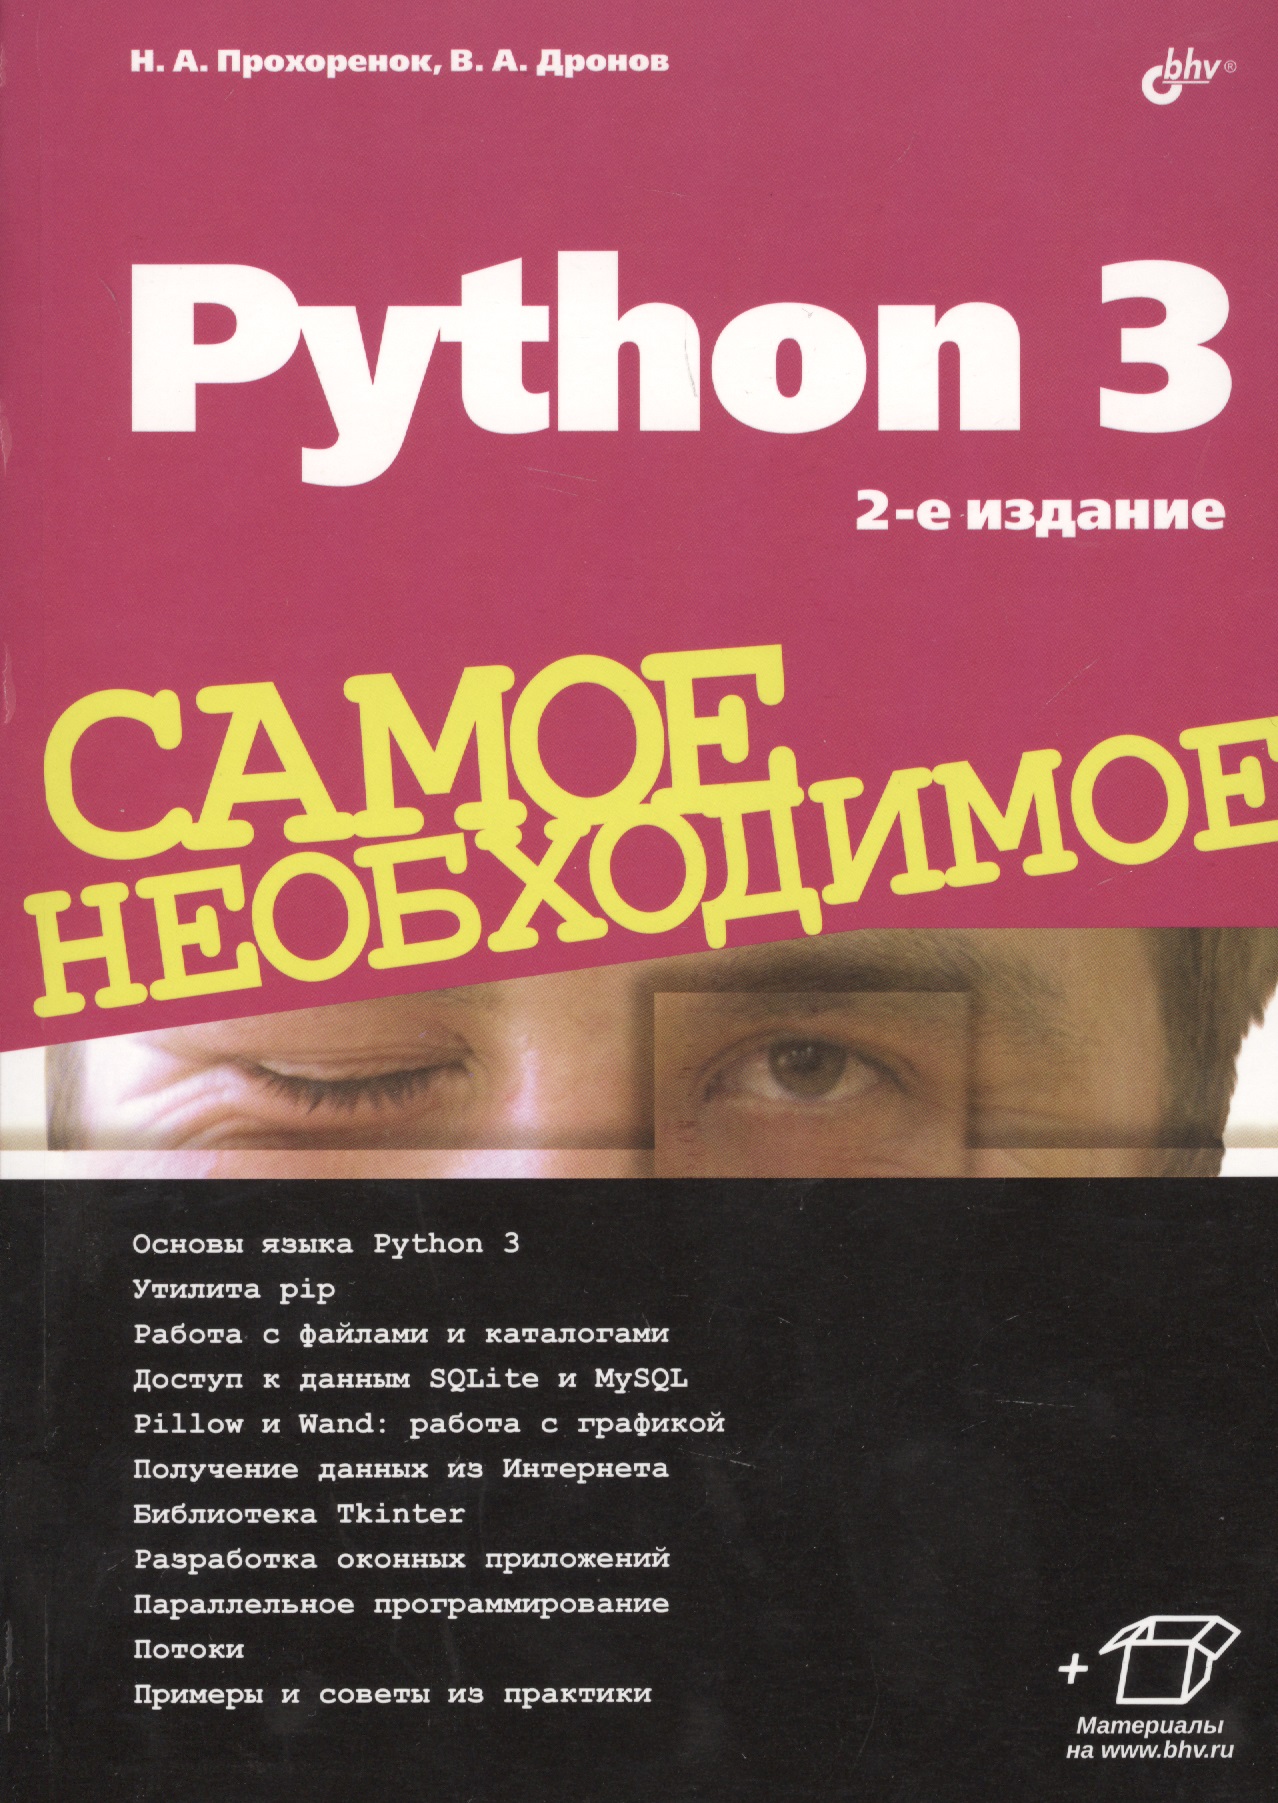 прохоренок николай анатольевич дронов владимир александрович python 3 и pyqt 5 разработка приложений 2 е издание Прохоренок Николай Анатольевич Python 3. Самое необходимое. 2-е издание, переработанное и дополненное